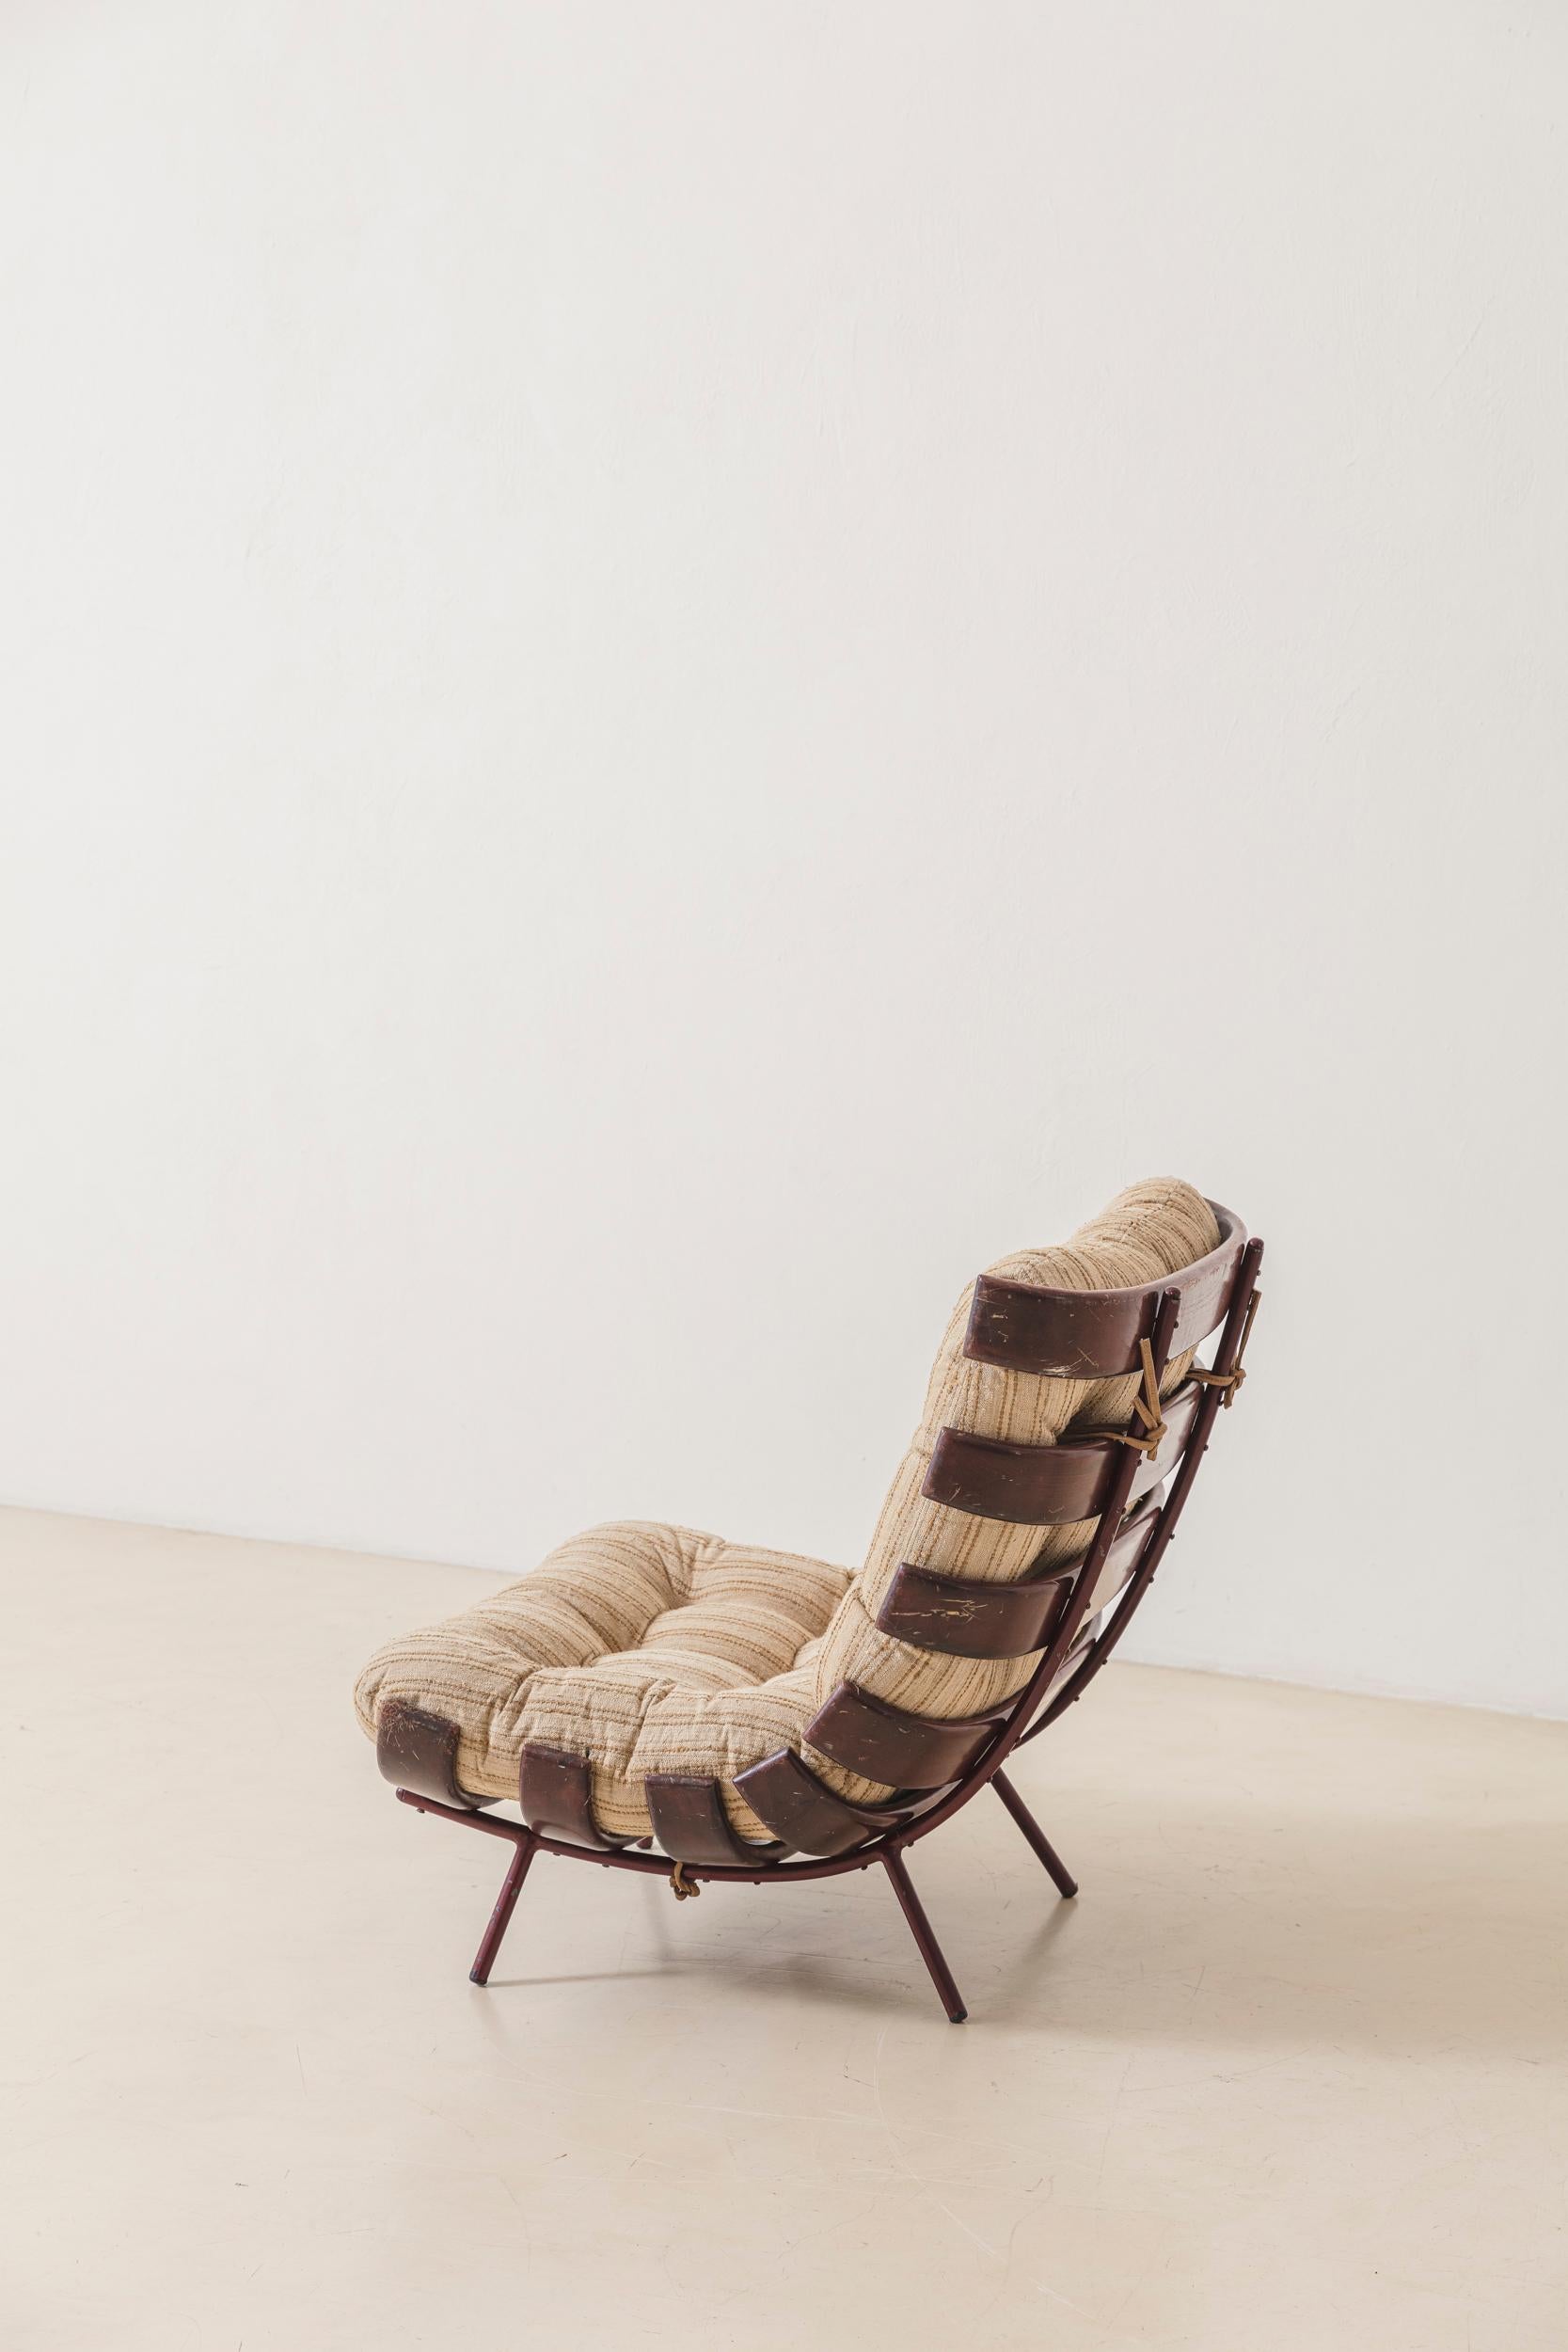 Le fauteuil Costela est une pièce emblématique de la modernité brésilienne du milieu du siècle. Il a été conçu par Martin Eisler (1913 - 1977) en 1953 et fabriqué par les sociétés Móveis Artesanal et Forma S.A. Móveis e Objetos de Arte, où il était